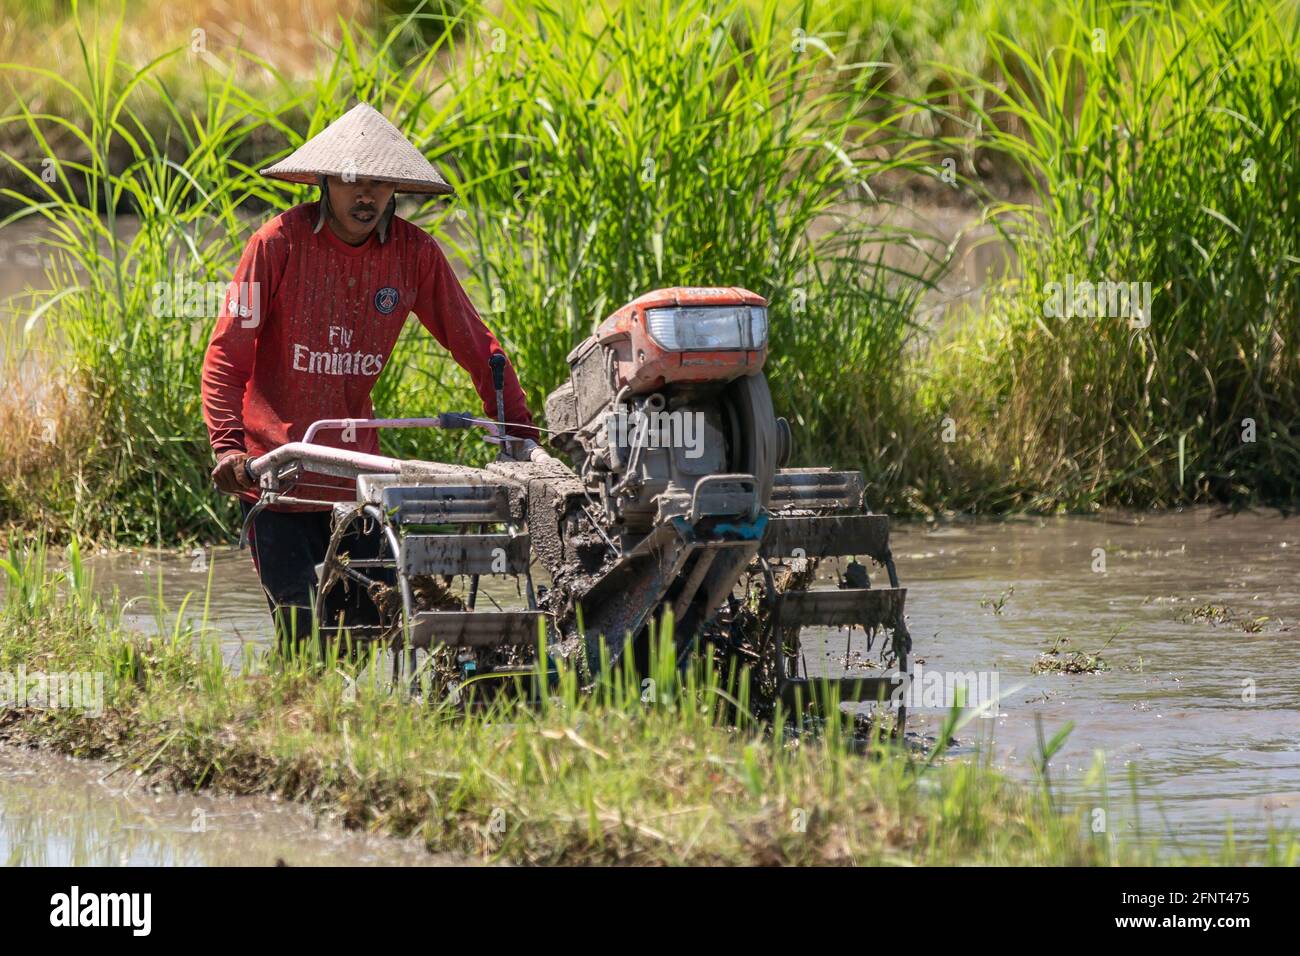 Bali, Indonesia - 6 de septiembre de 2016: Un granjero no identificado que trabaja en el campo de arroz en Bali, Indonesia. Foto de stock